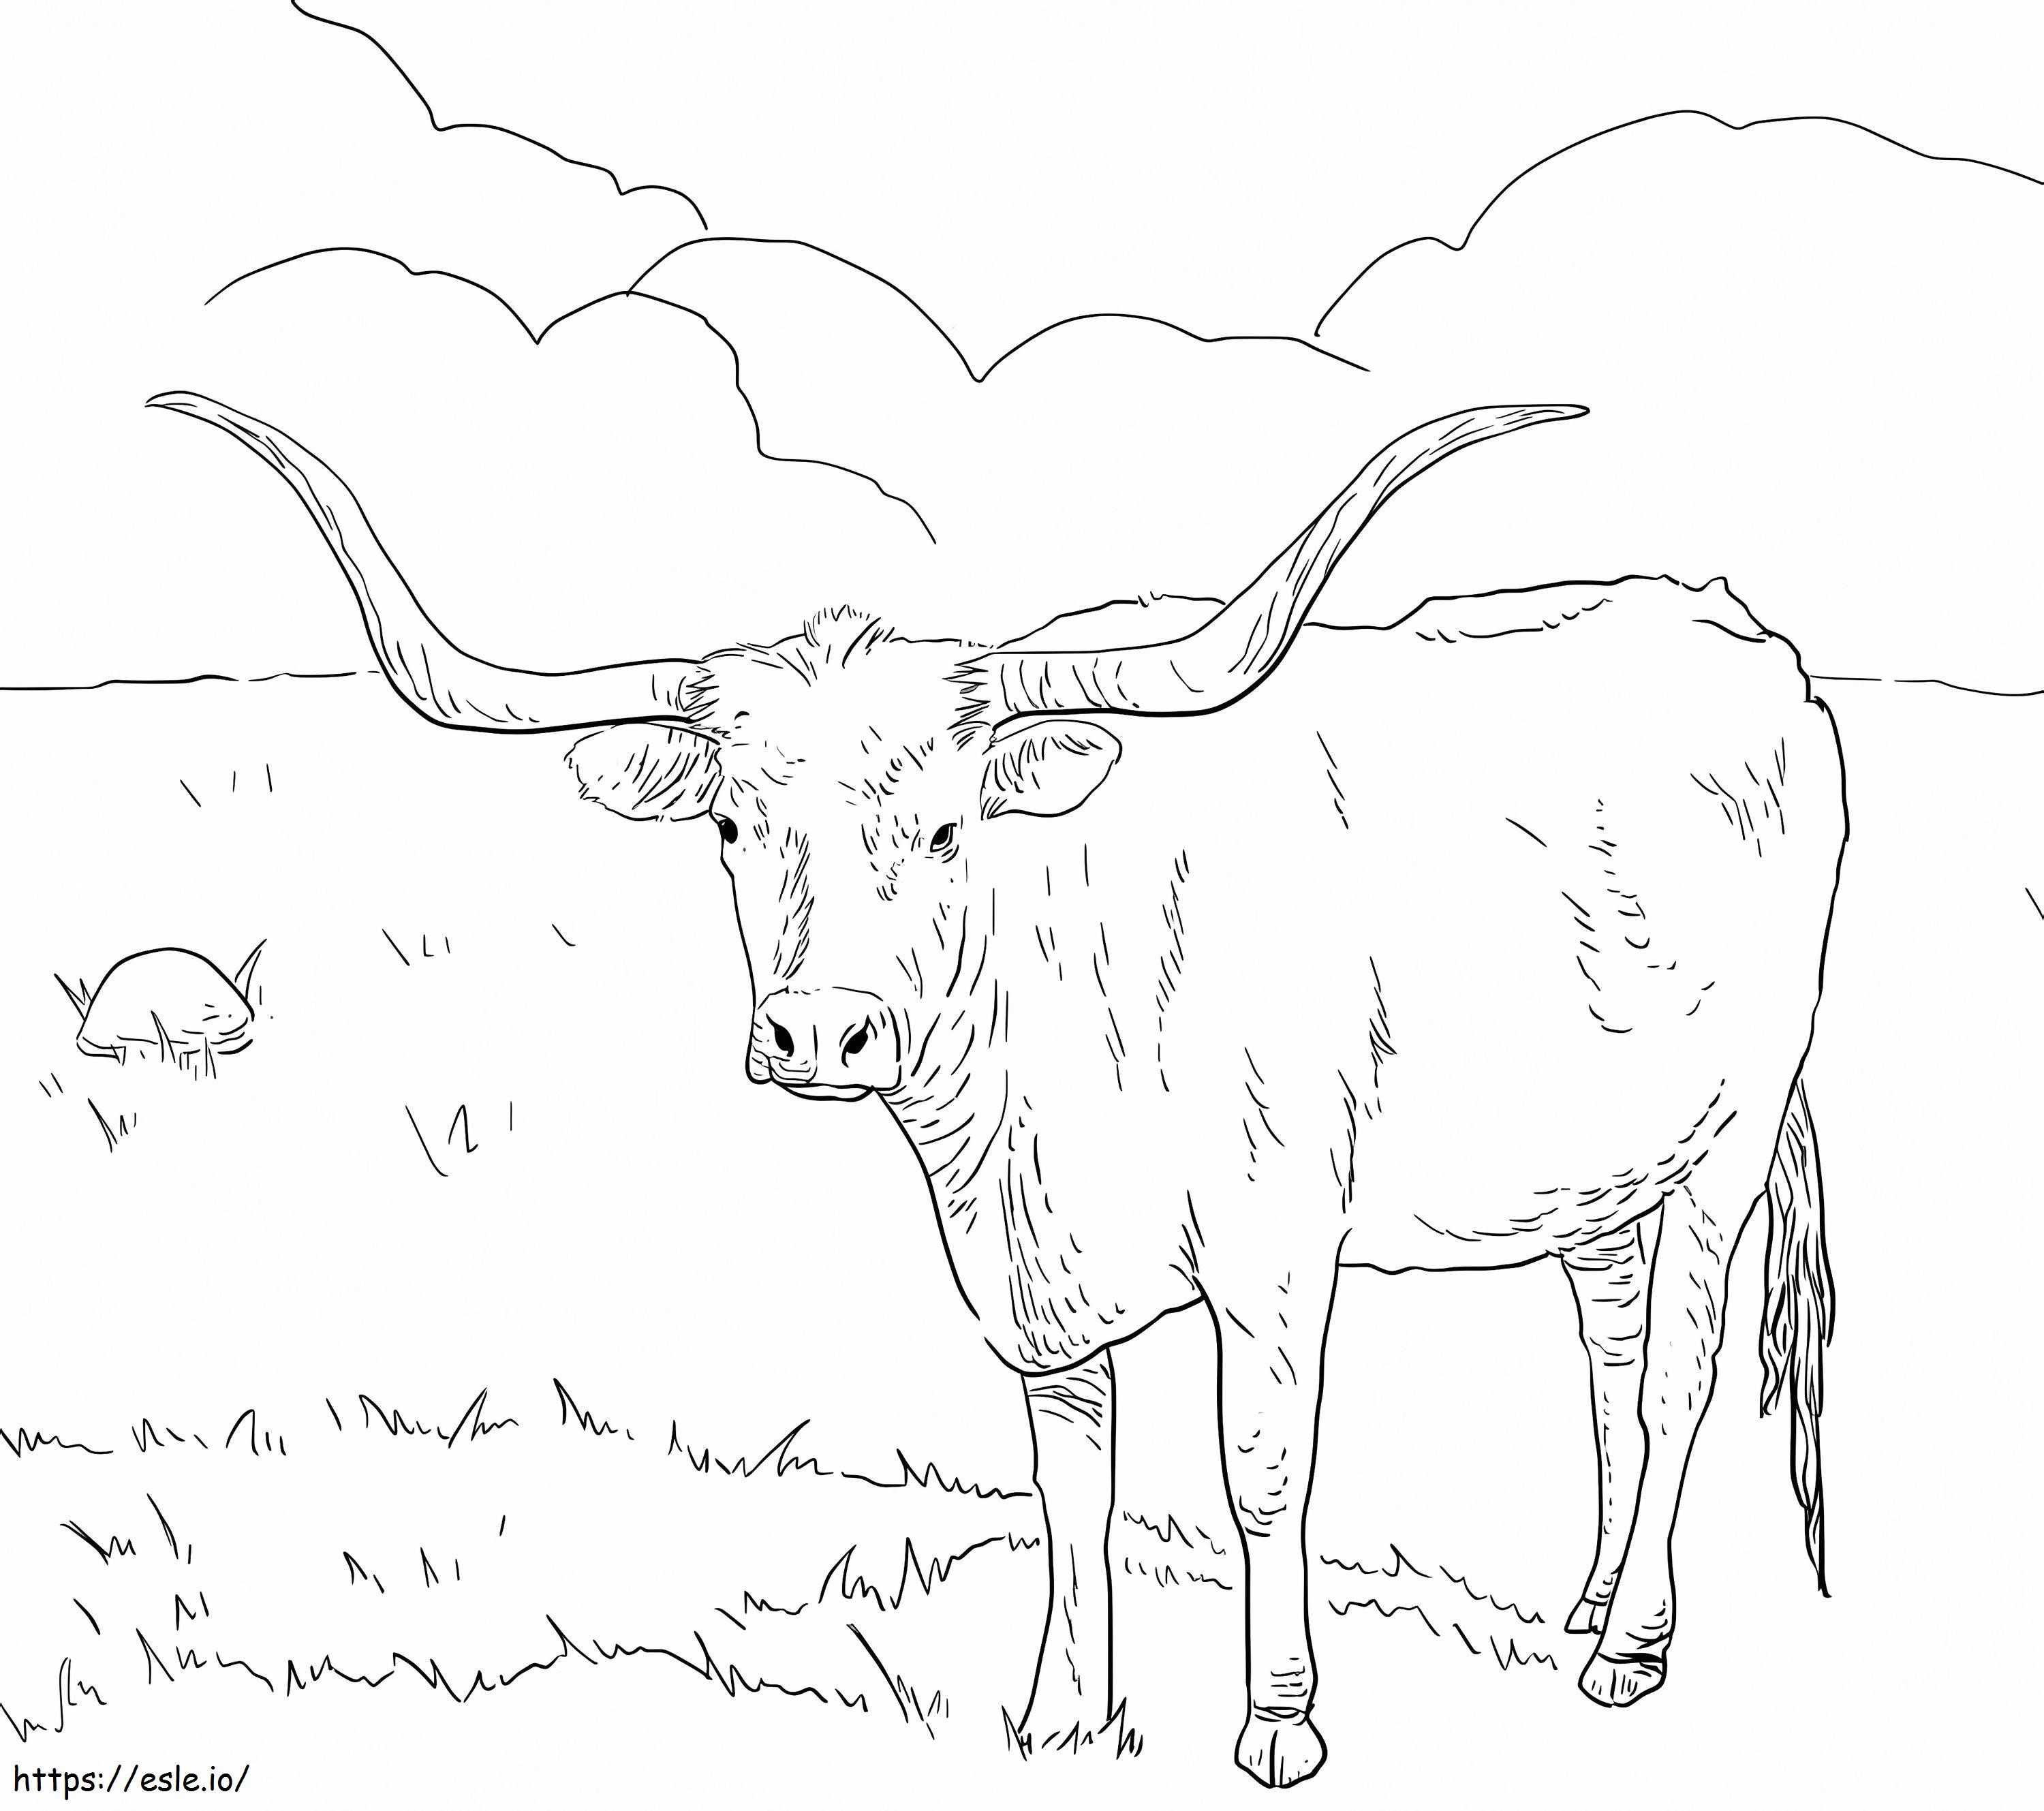 Mucca dalle corna lunghe del Texas da colorare